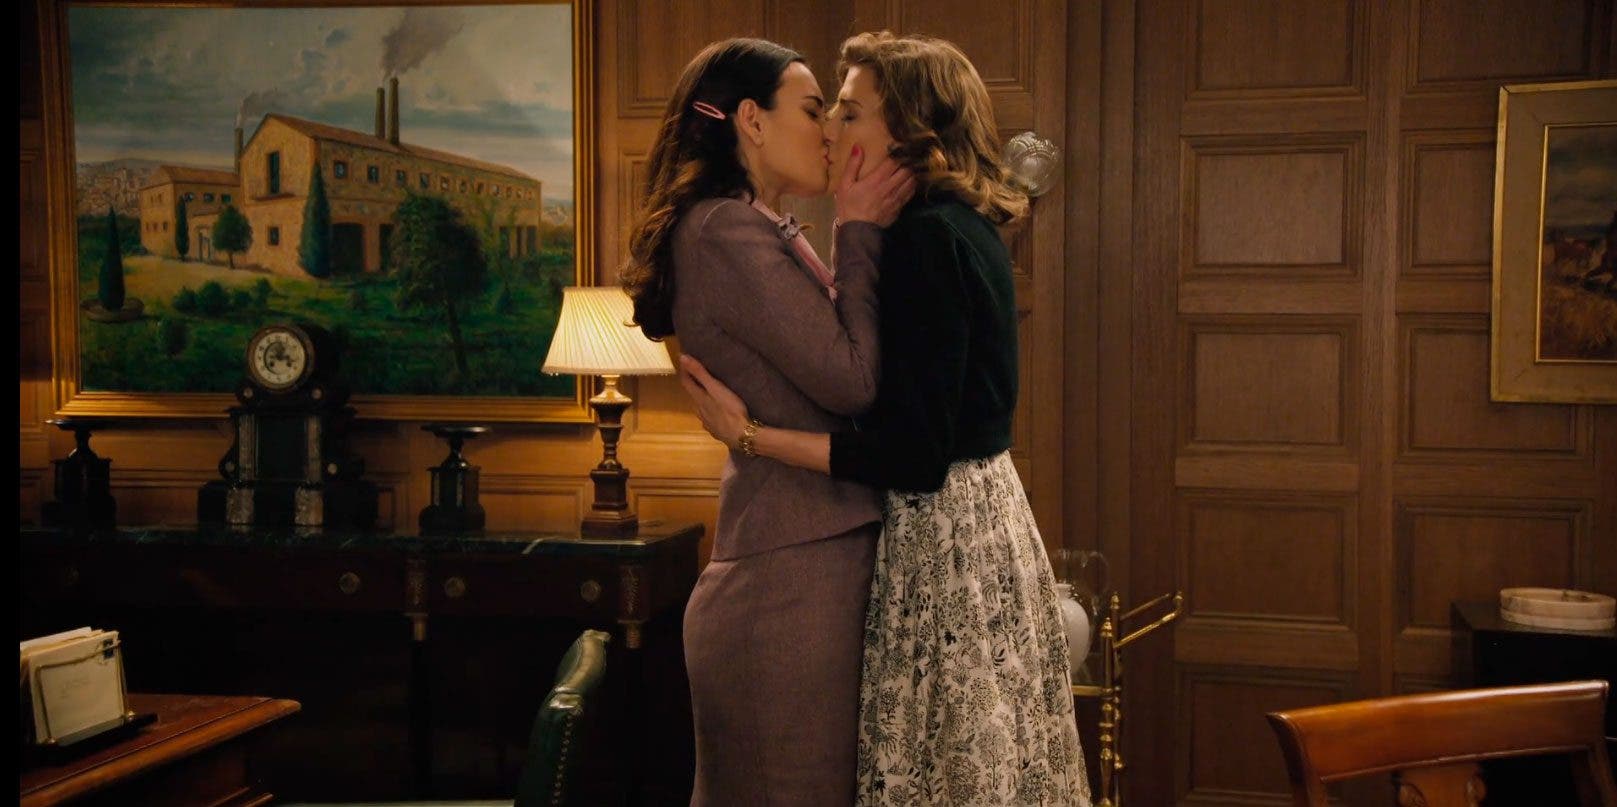 Fina y Marta besándose en la oficina